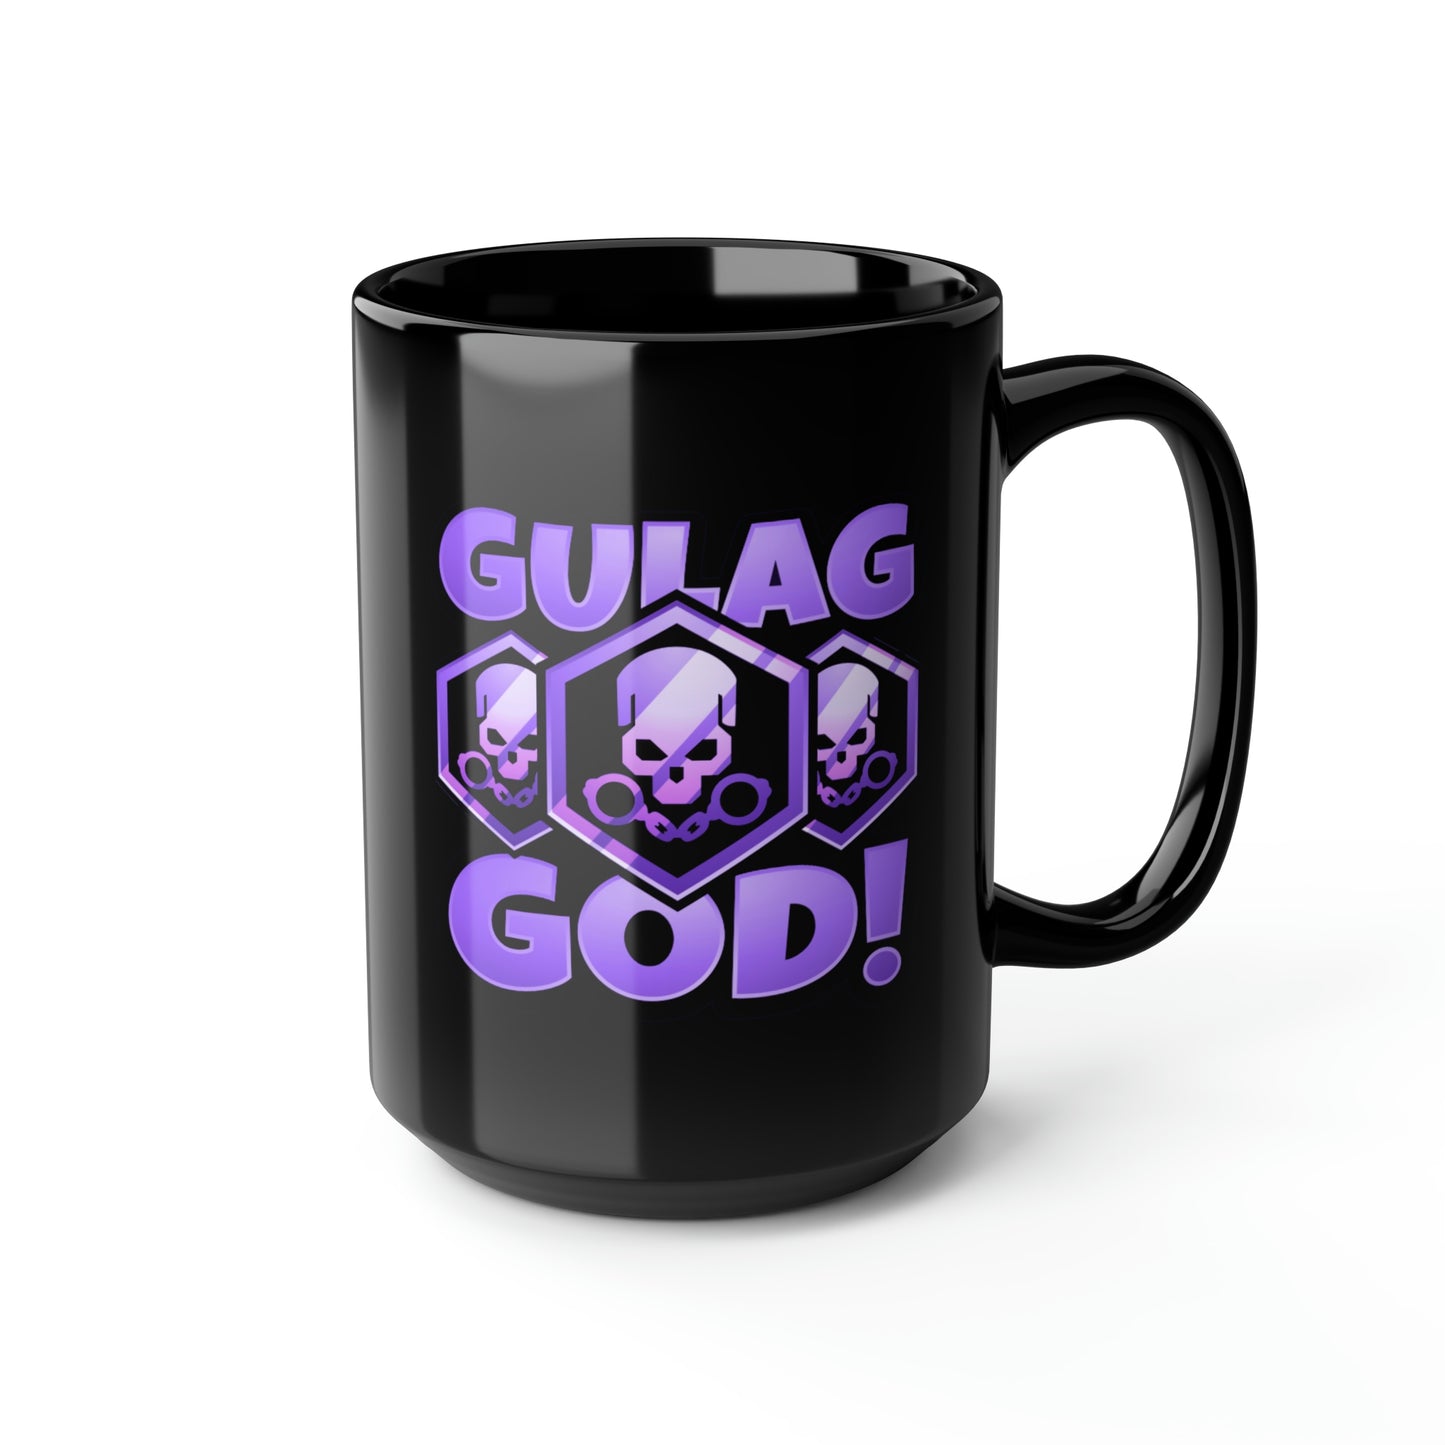 Spangs Gulag God Black Mug, 15oz